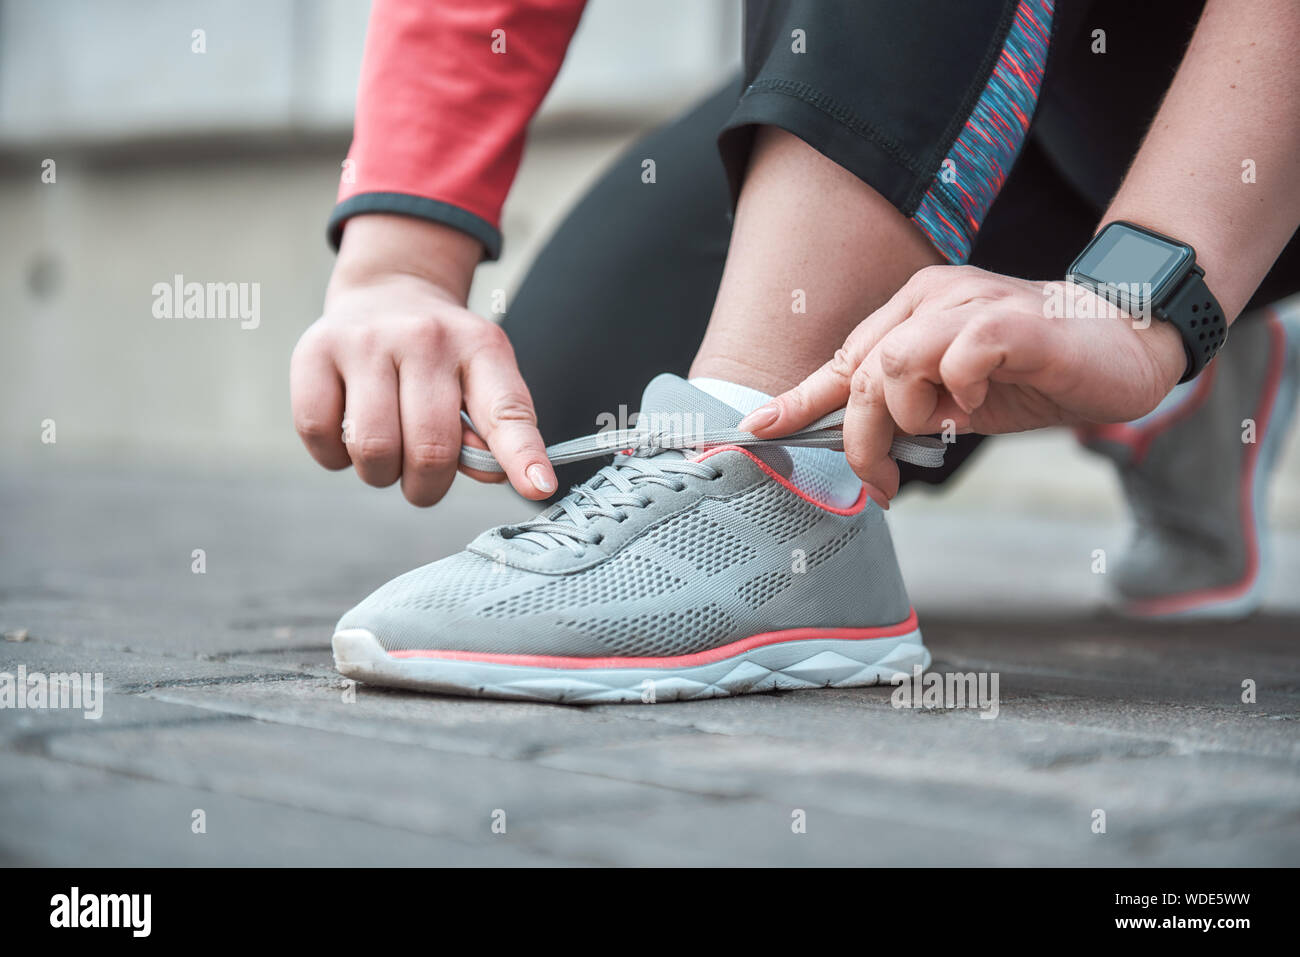 Imagen recortada de una mujer en ropa deportiva shoelace atado mientras está parado afuera. Concepto de deporte Foto de stock